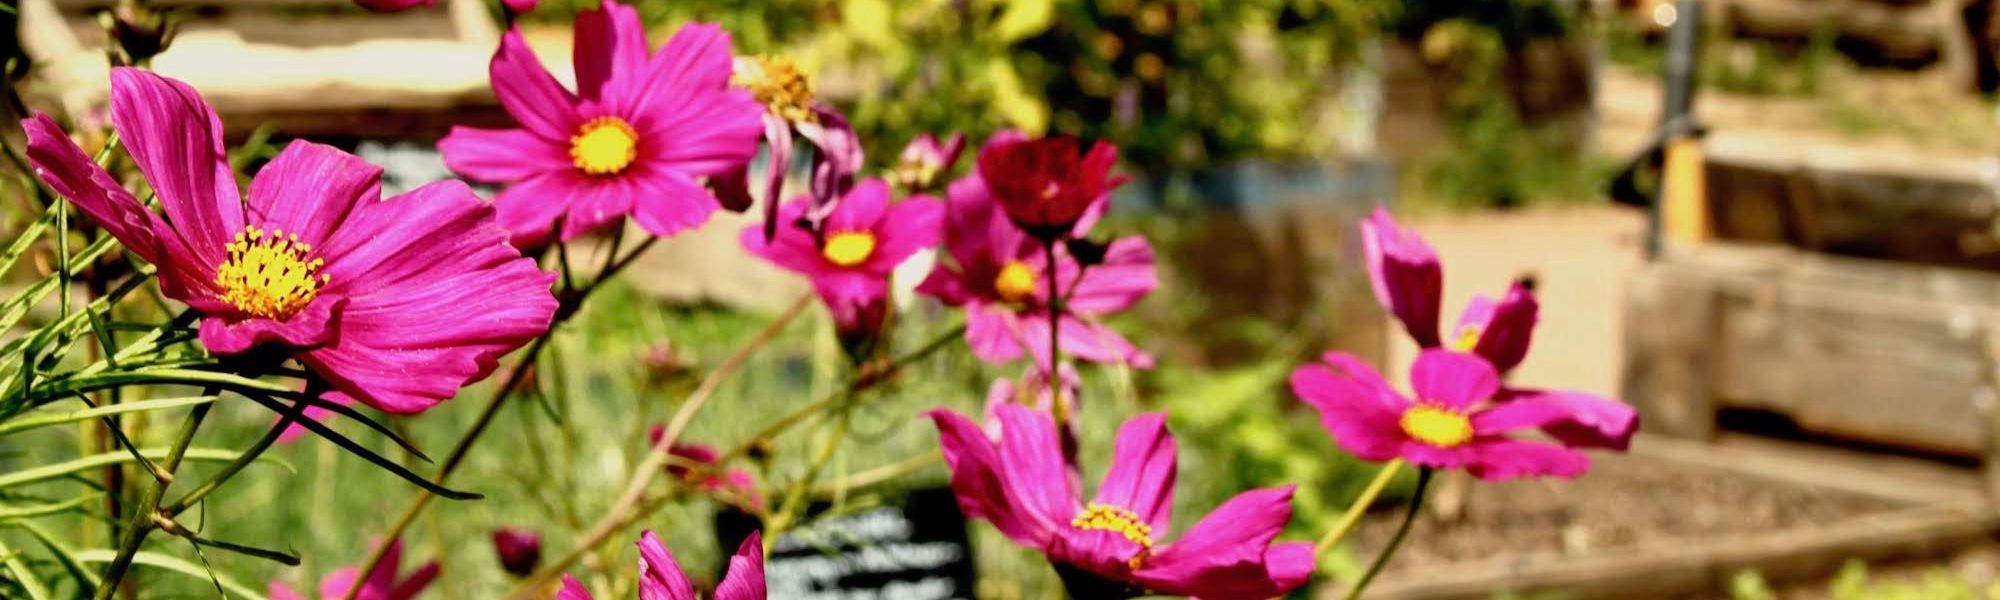 Im Vordergrund sind pinke Cosmea-Blüten zu sehen, im Hintergrund die Beete im Garten.